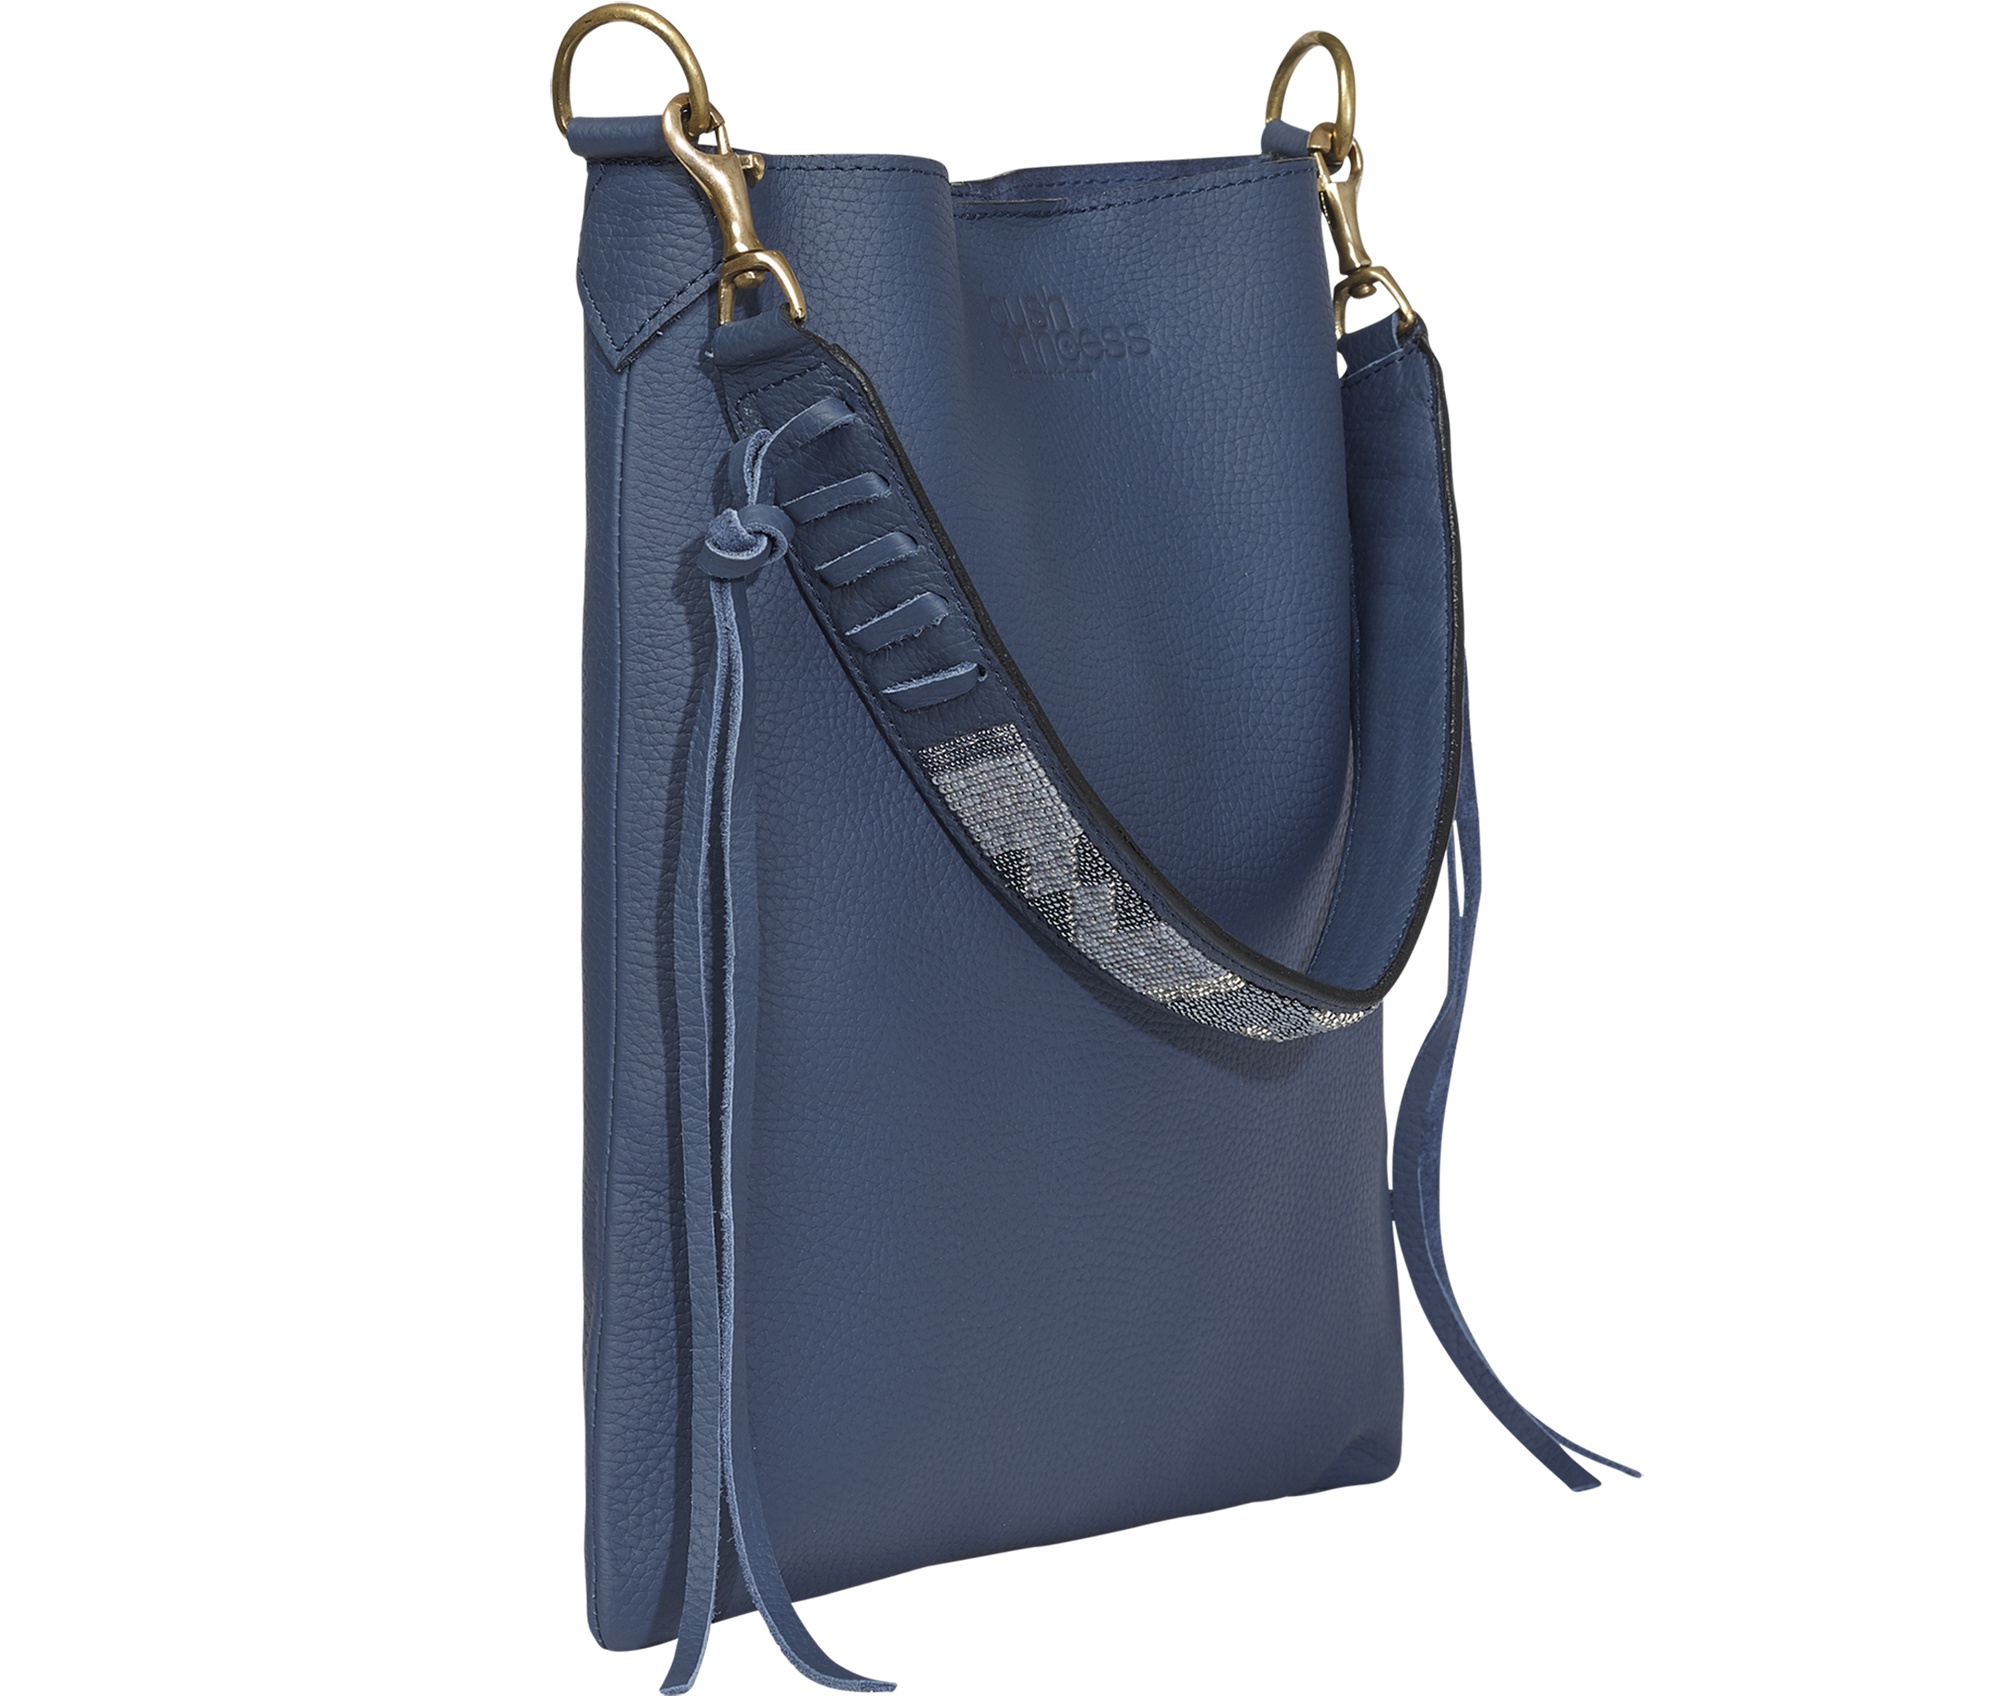 Handbag Beaded Strap Shoulder Bag